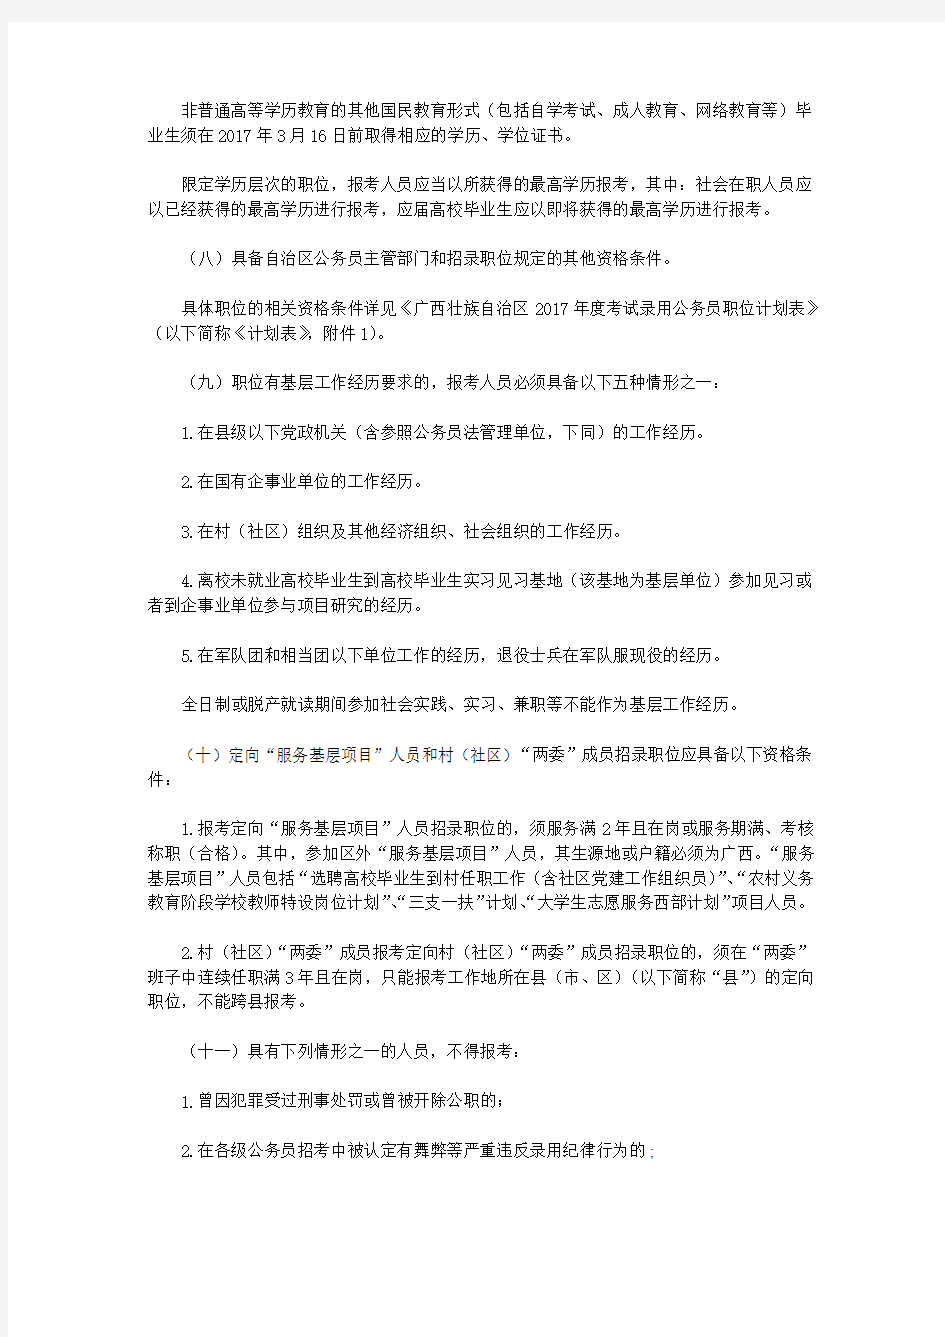 广西壮族自治区2017年度考试录用公务员公告(2017)